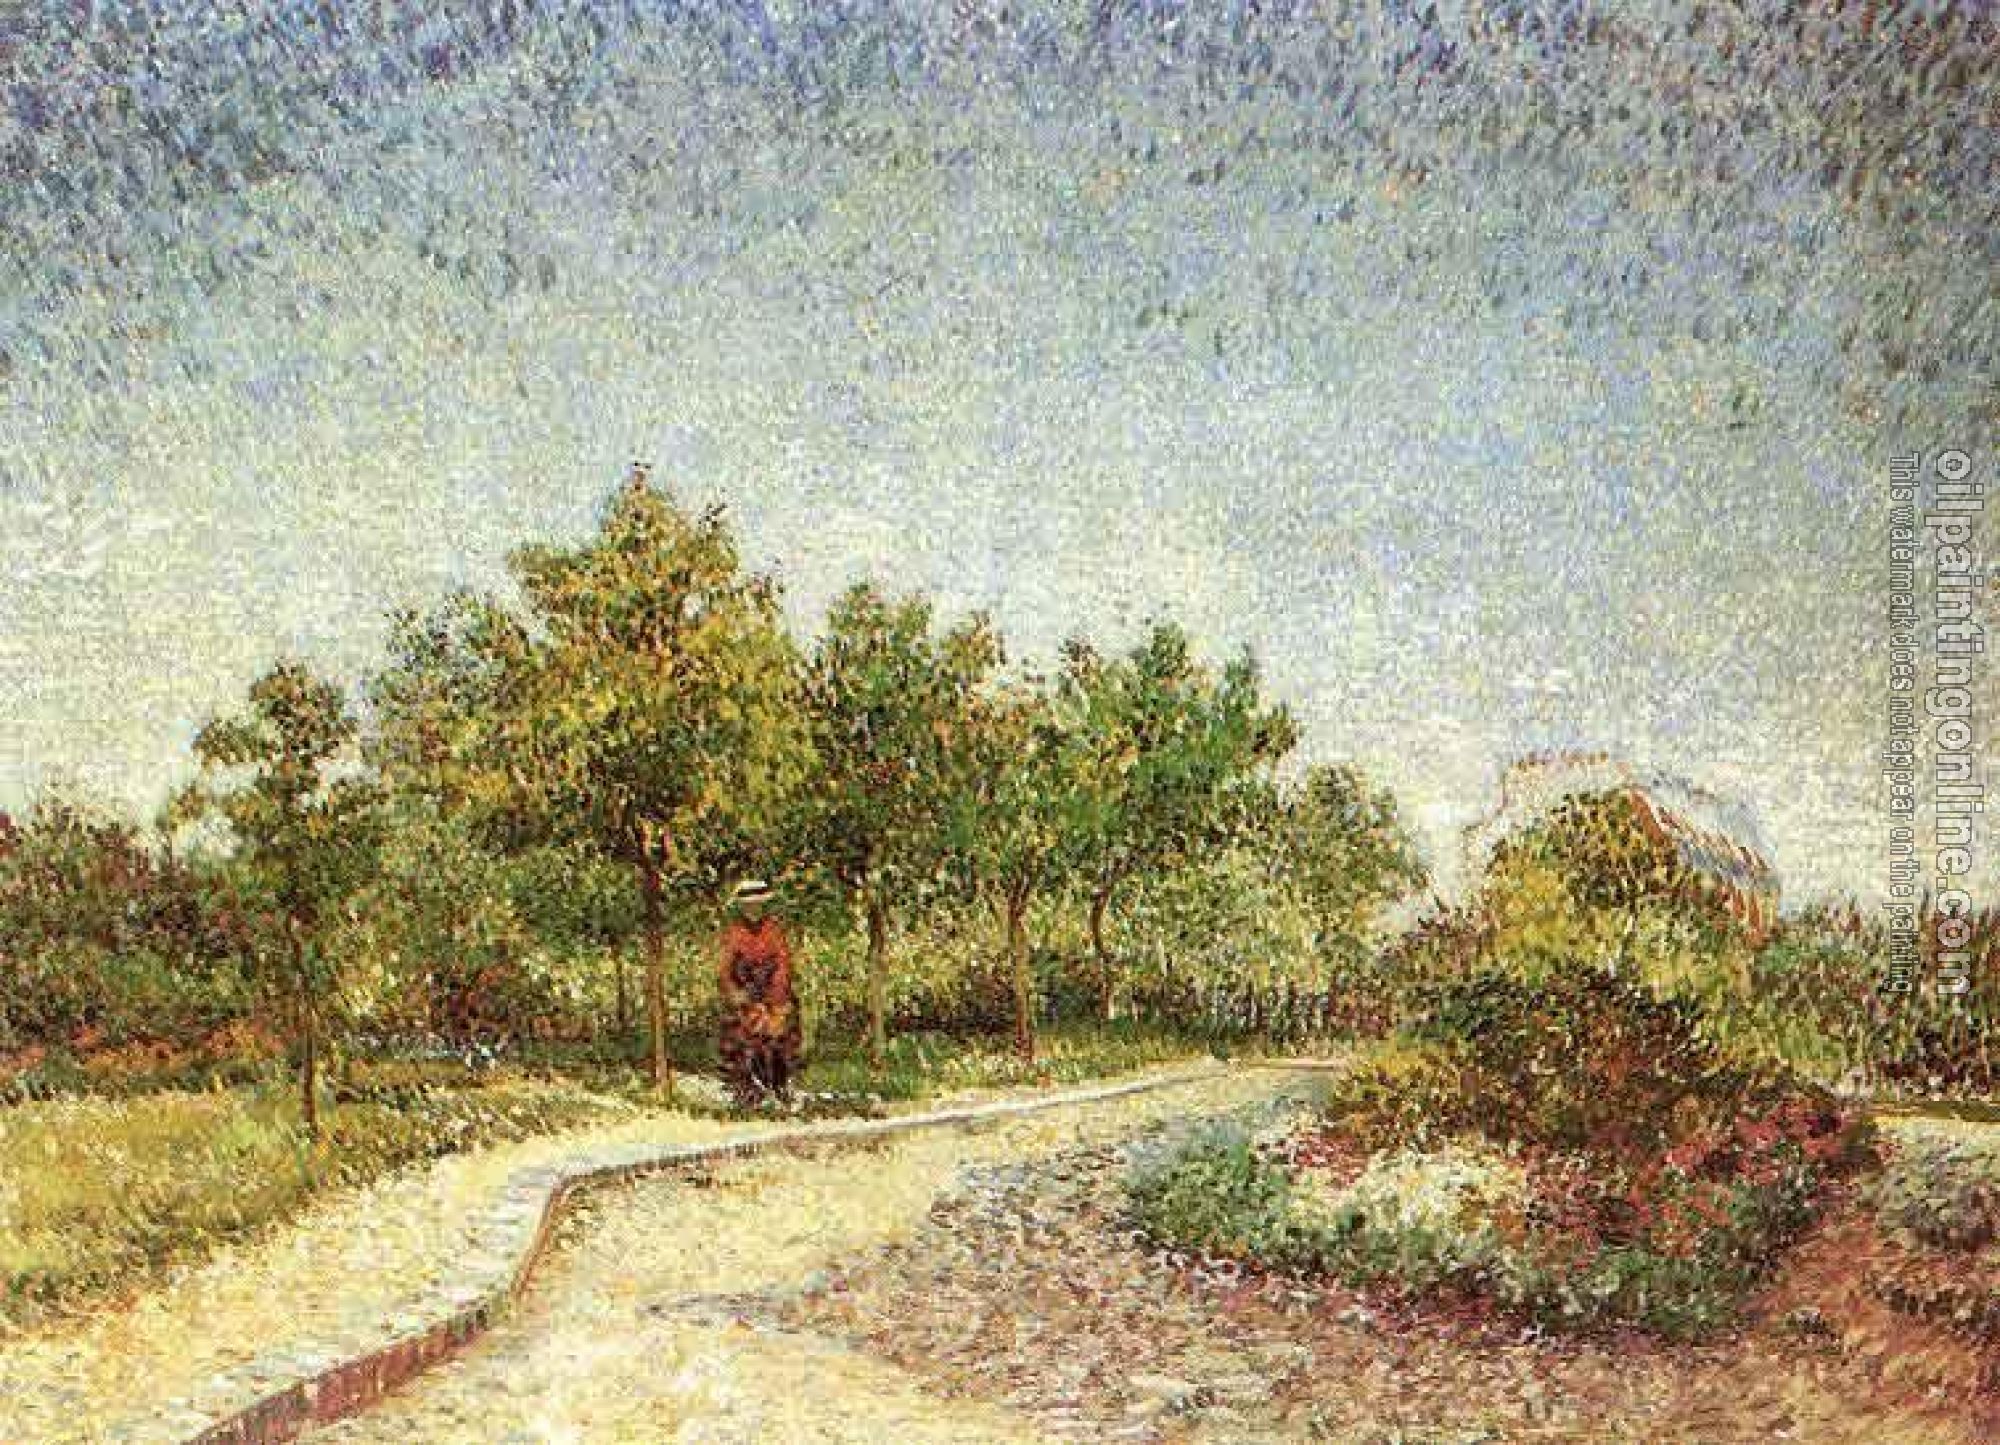 Gogh, Vincent van - Lane in Voyer d'Argenson Park at Asnieres